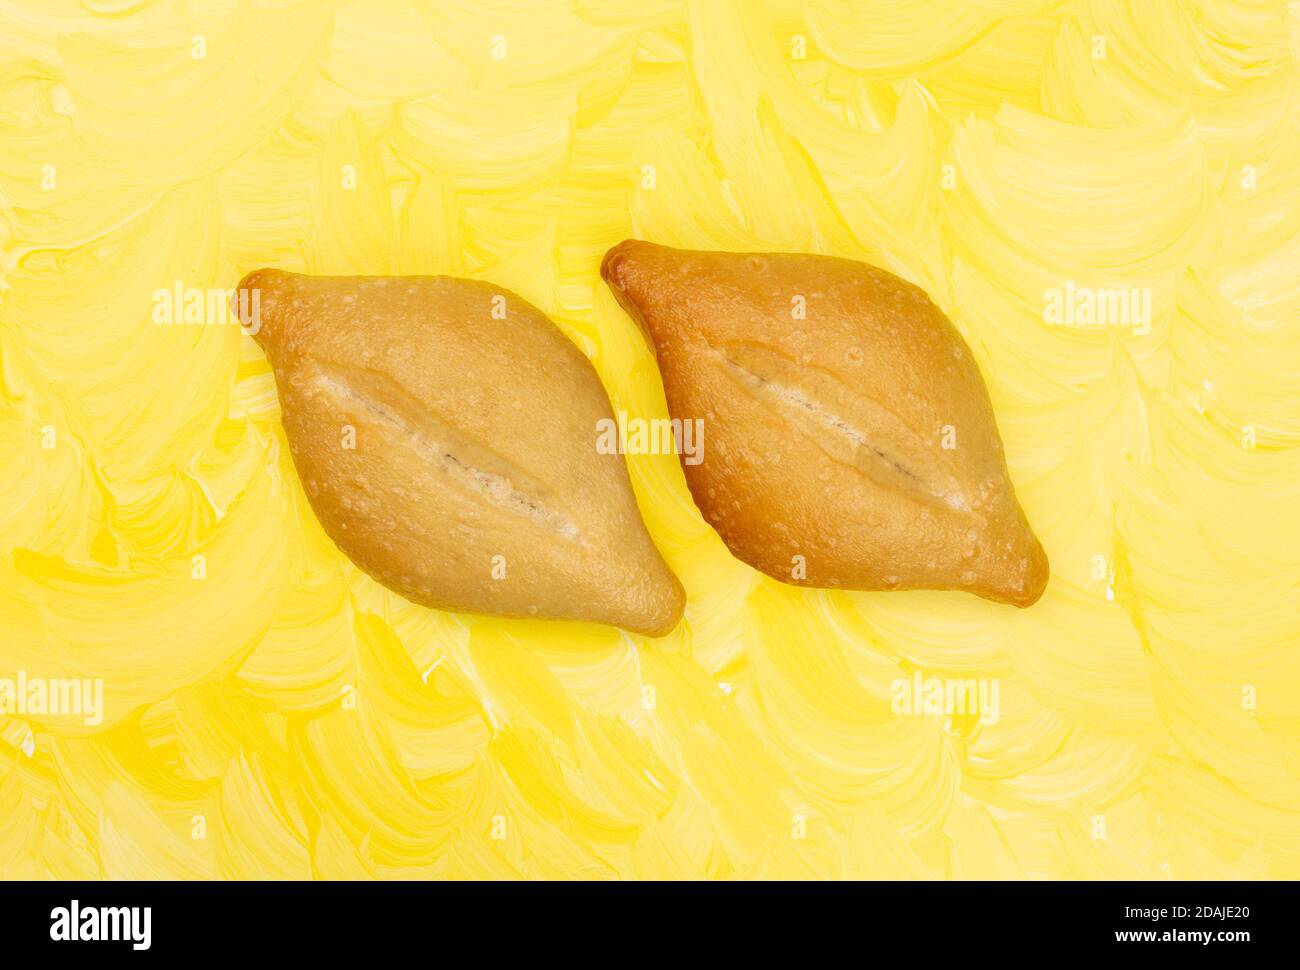 Blick von oben auf zwei frisch gebackene Bolillo Brötchen Seite an Seite auf einem gelb gestrichenen Hintergrund. Stockfoto